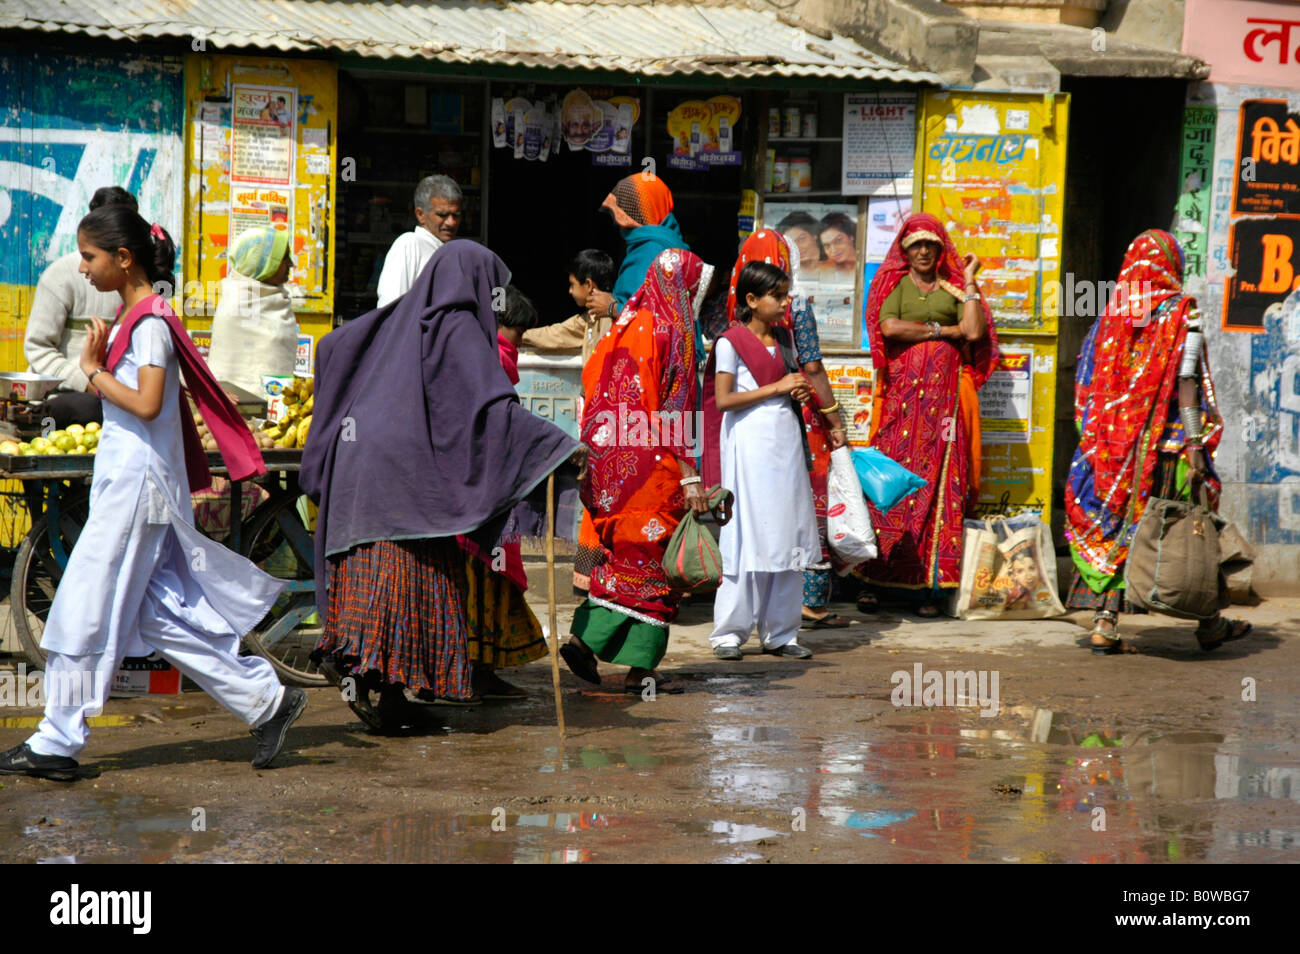 Bunte Straßenbild von Menschen vor einer Wand bedeckt in der Werbung, Lachmangarh, Rajasthan, Indien Stockfoto